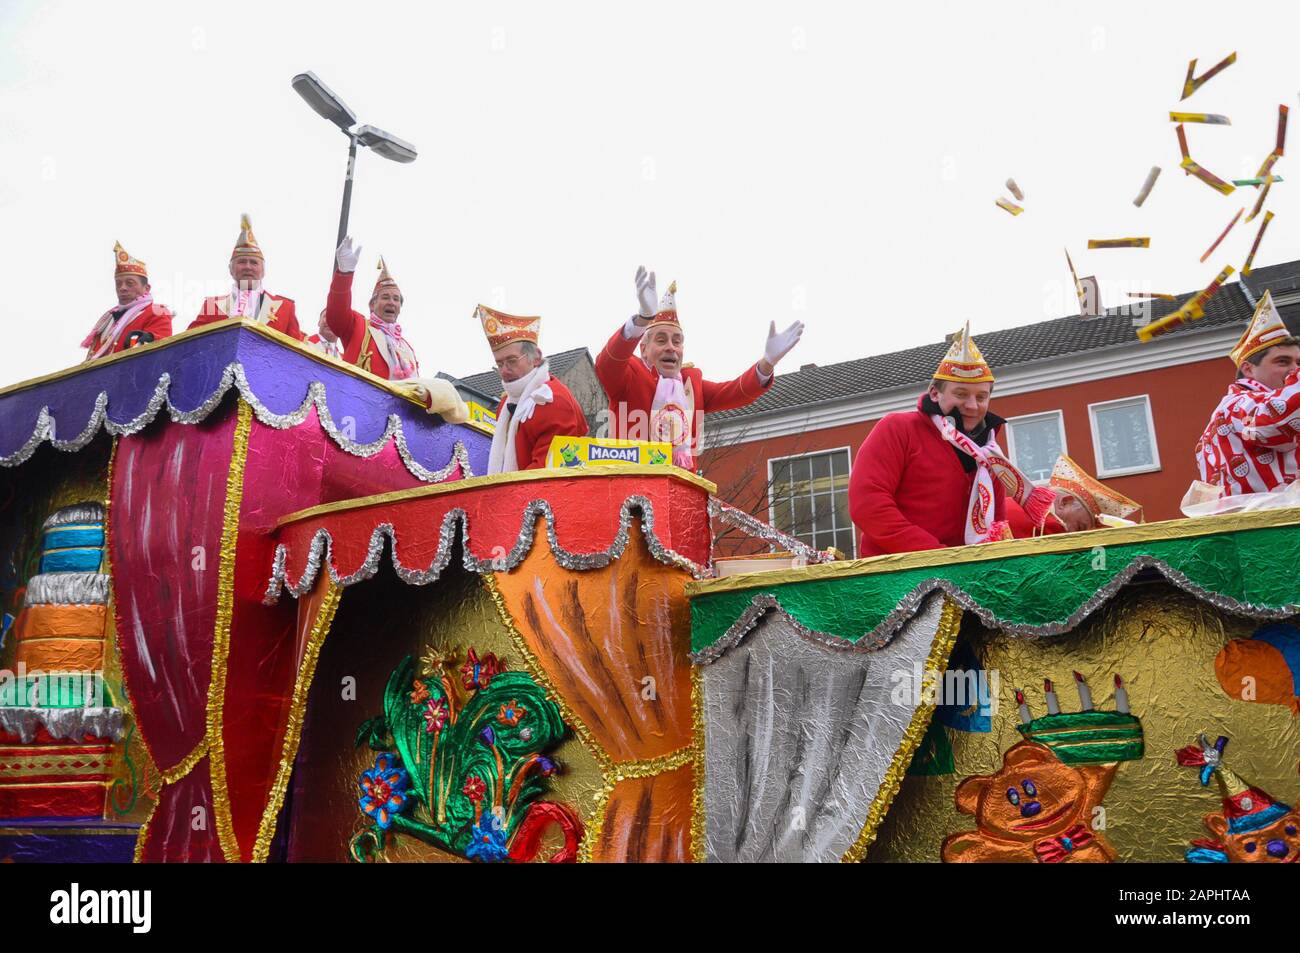 Neuwied, Allemagne 11 Février 2013. Le carnaval allemand annuel, Rosenmontag (anglais: Rose lundi) a lieu le lundi Shrove avant le mercredi des cendres, Banque D'Images